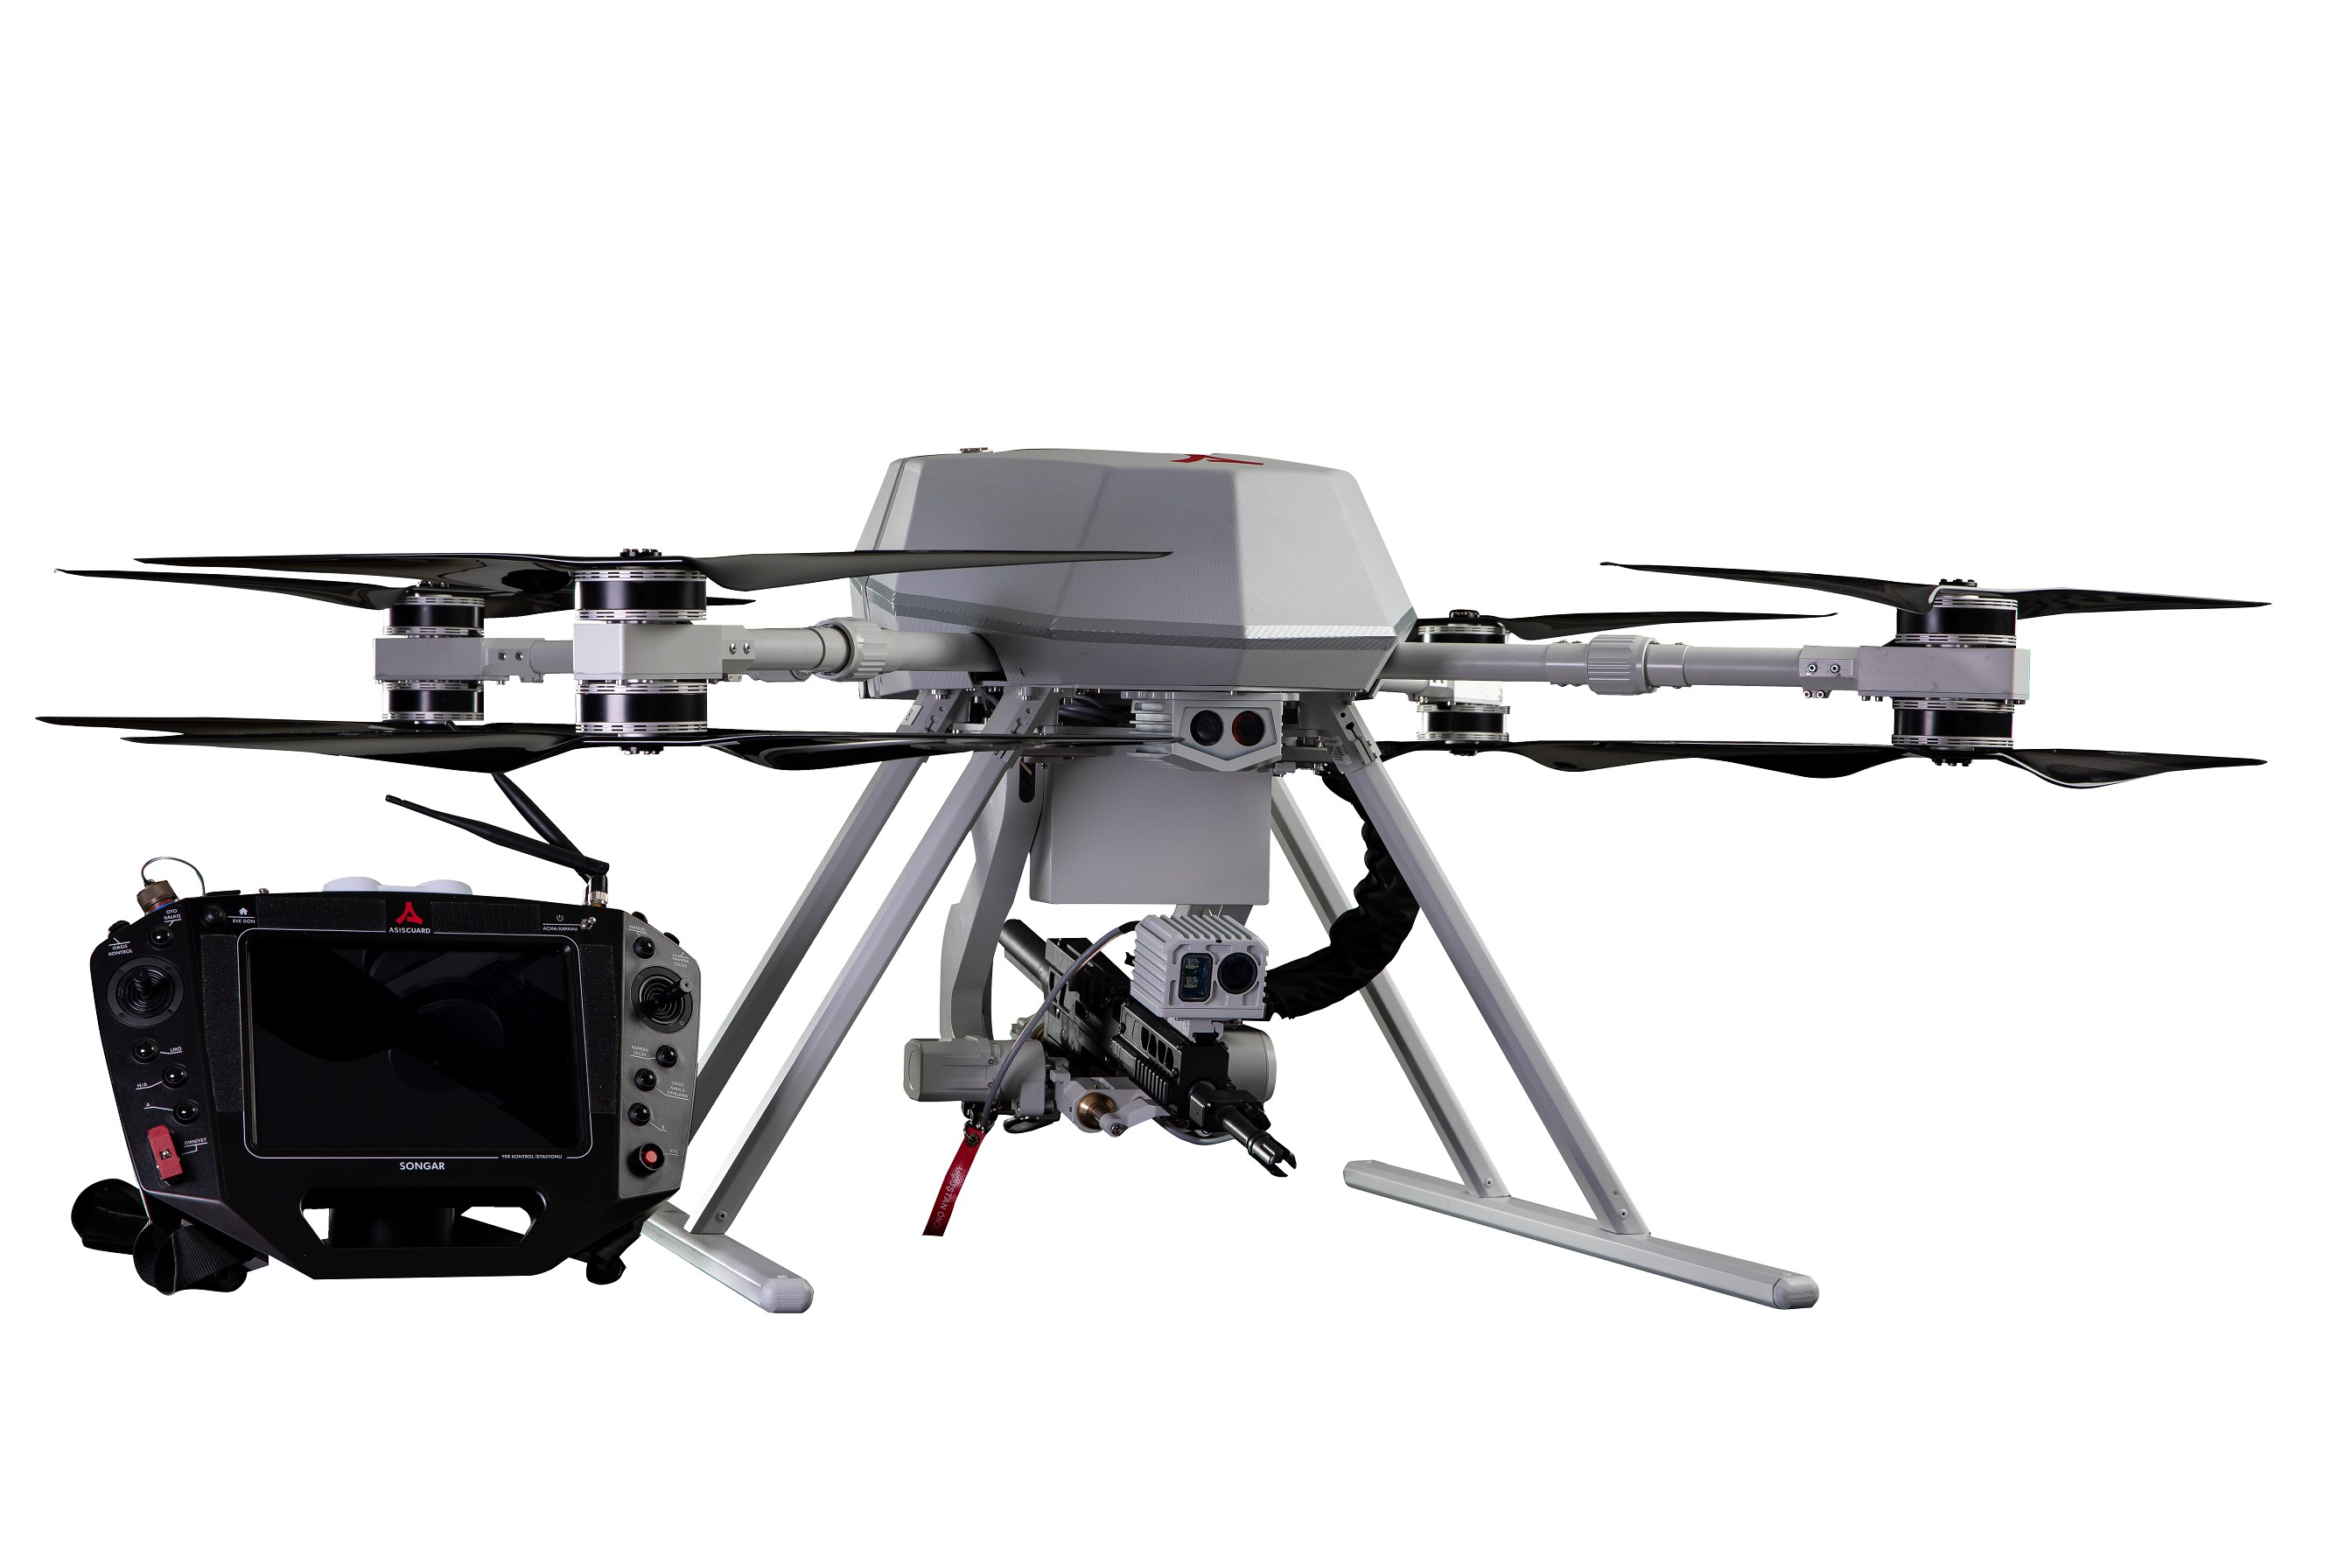 Makineli tüfekli drone Songar'a 'Yerli Malı Belgesi'